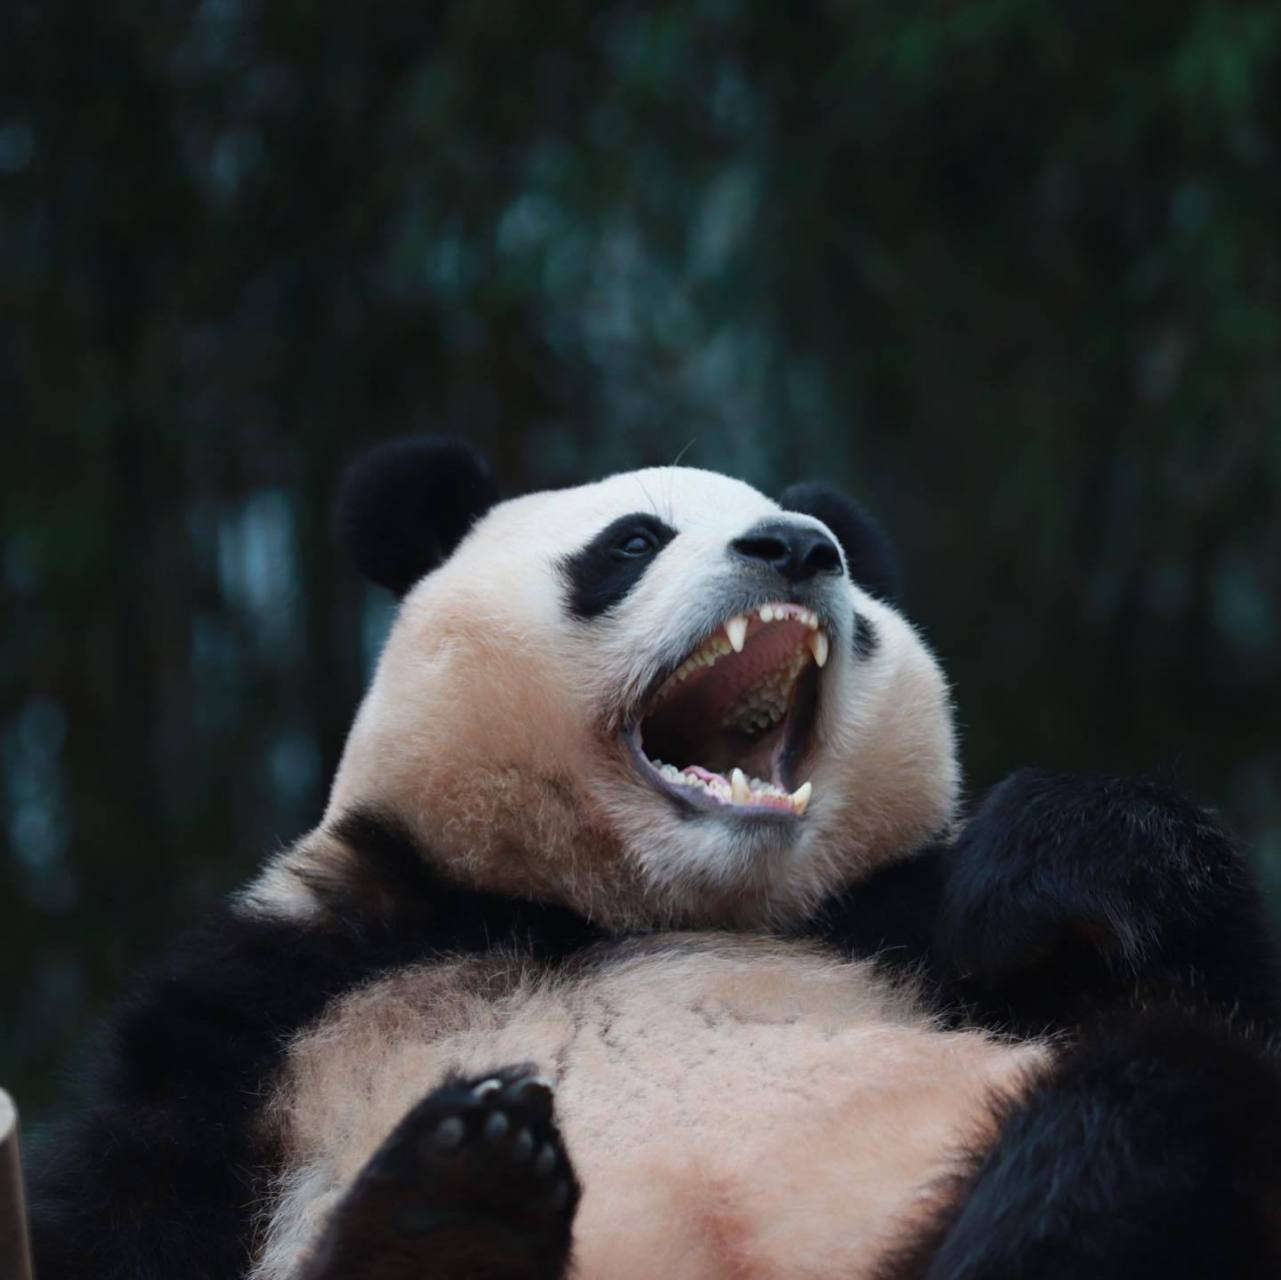 张大嘴的熊猫表情包图片